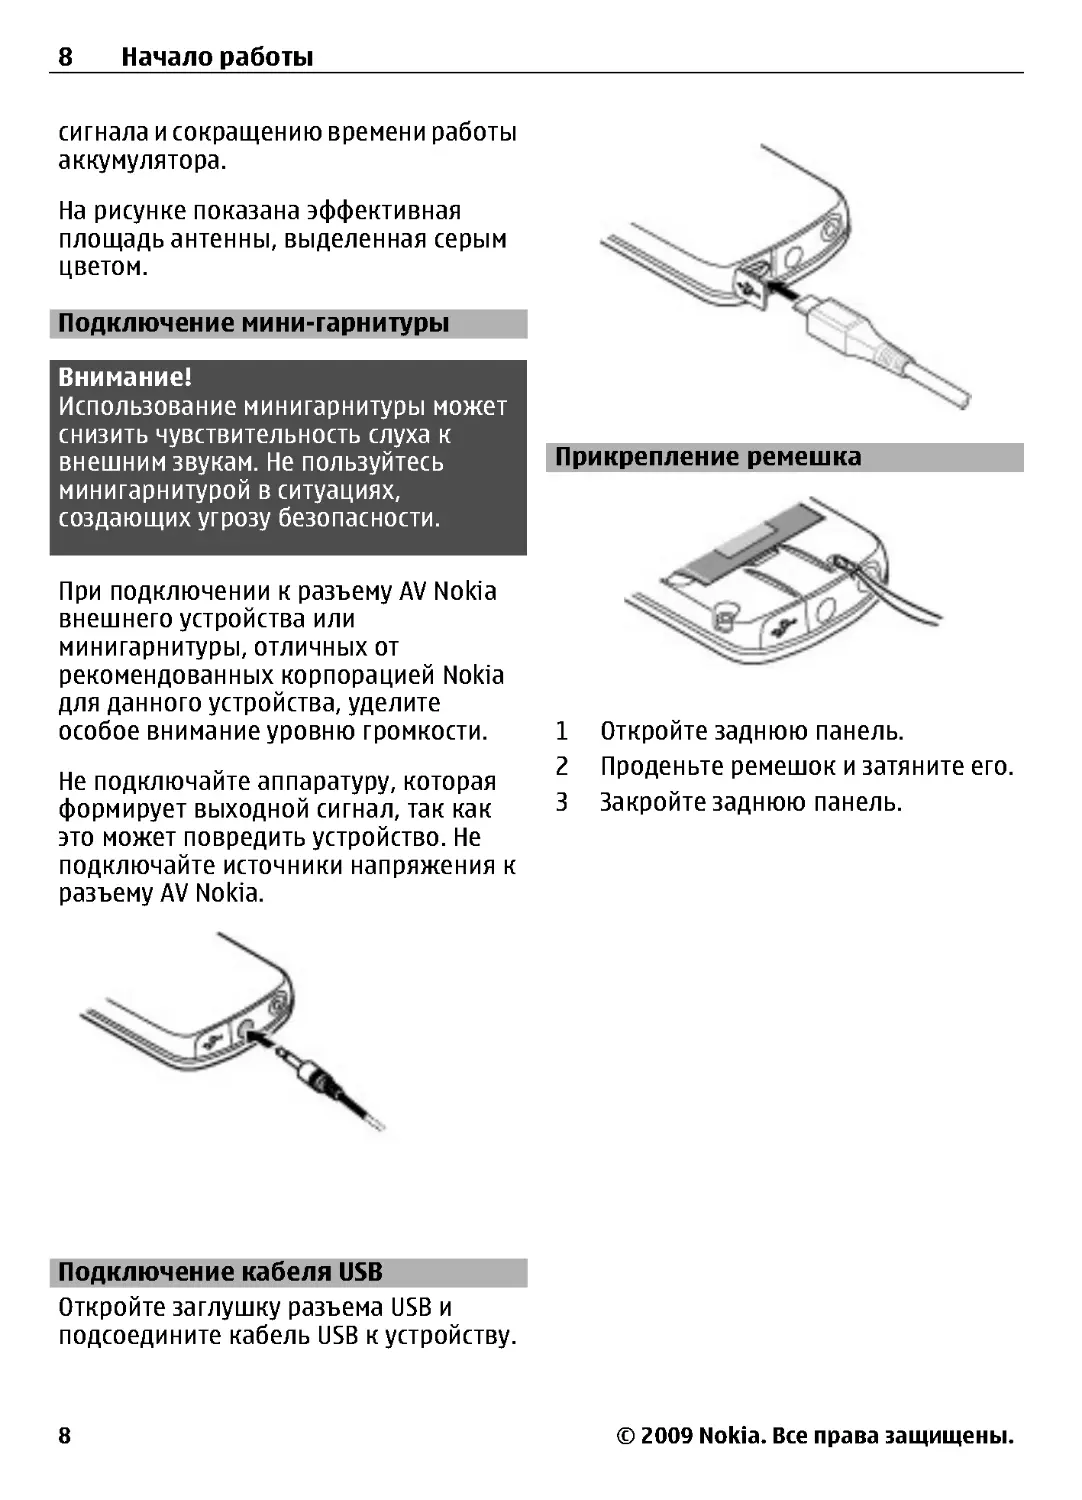 Подключение мини-гарнитуры
Подключение кабеля USB
Прикрепление ремешка